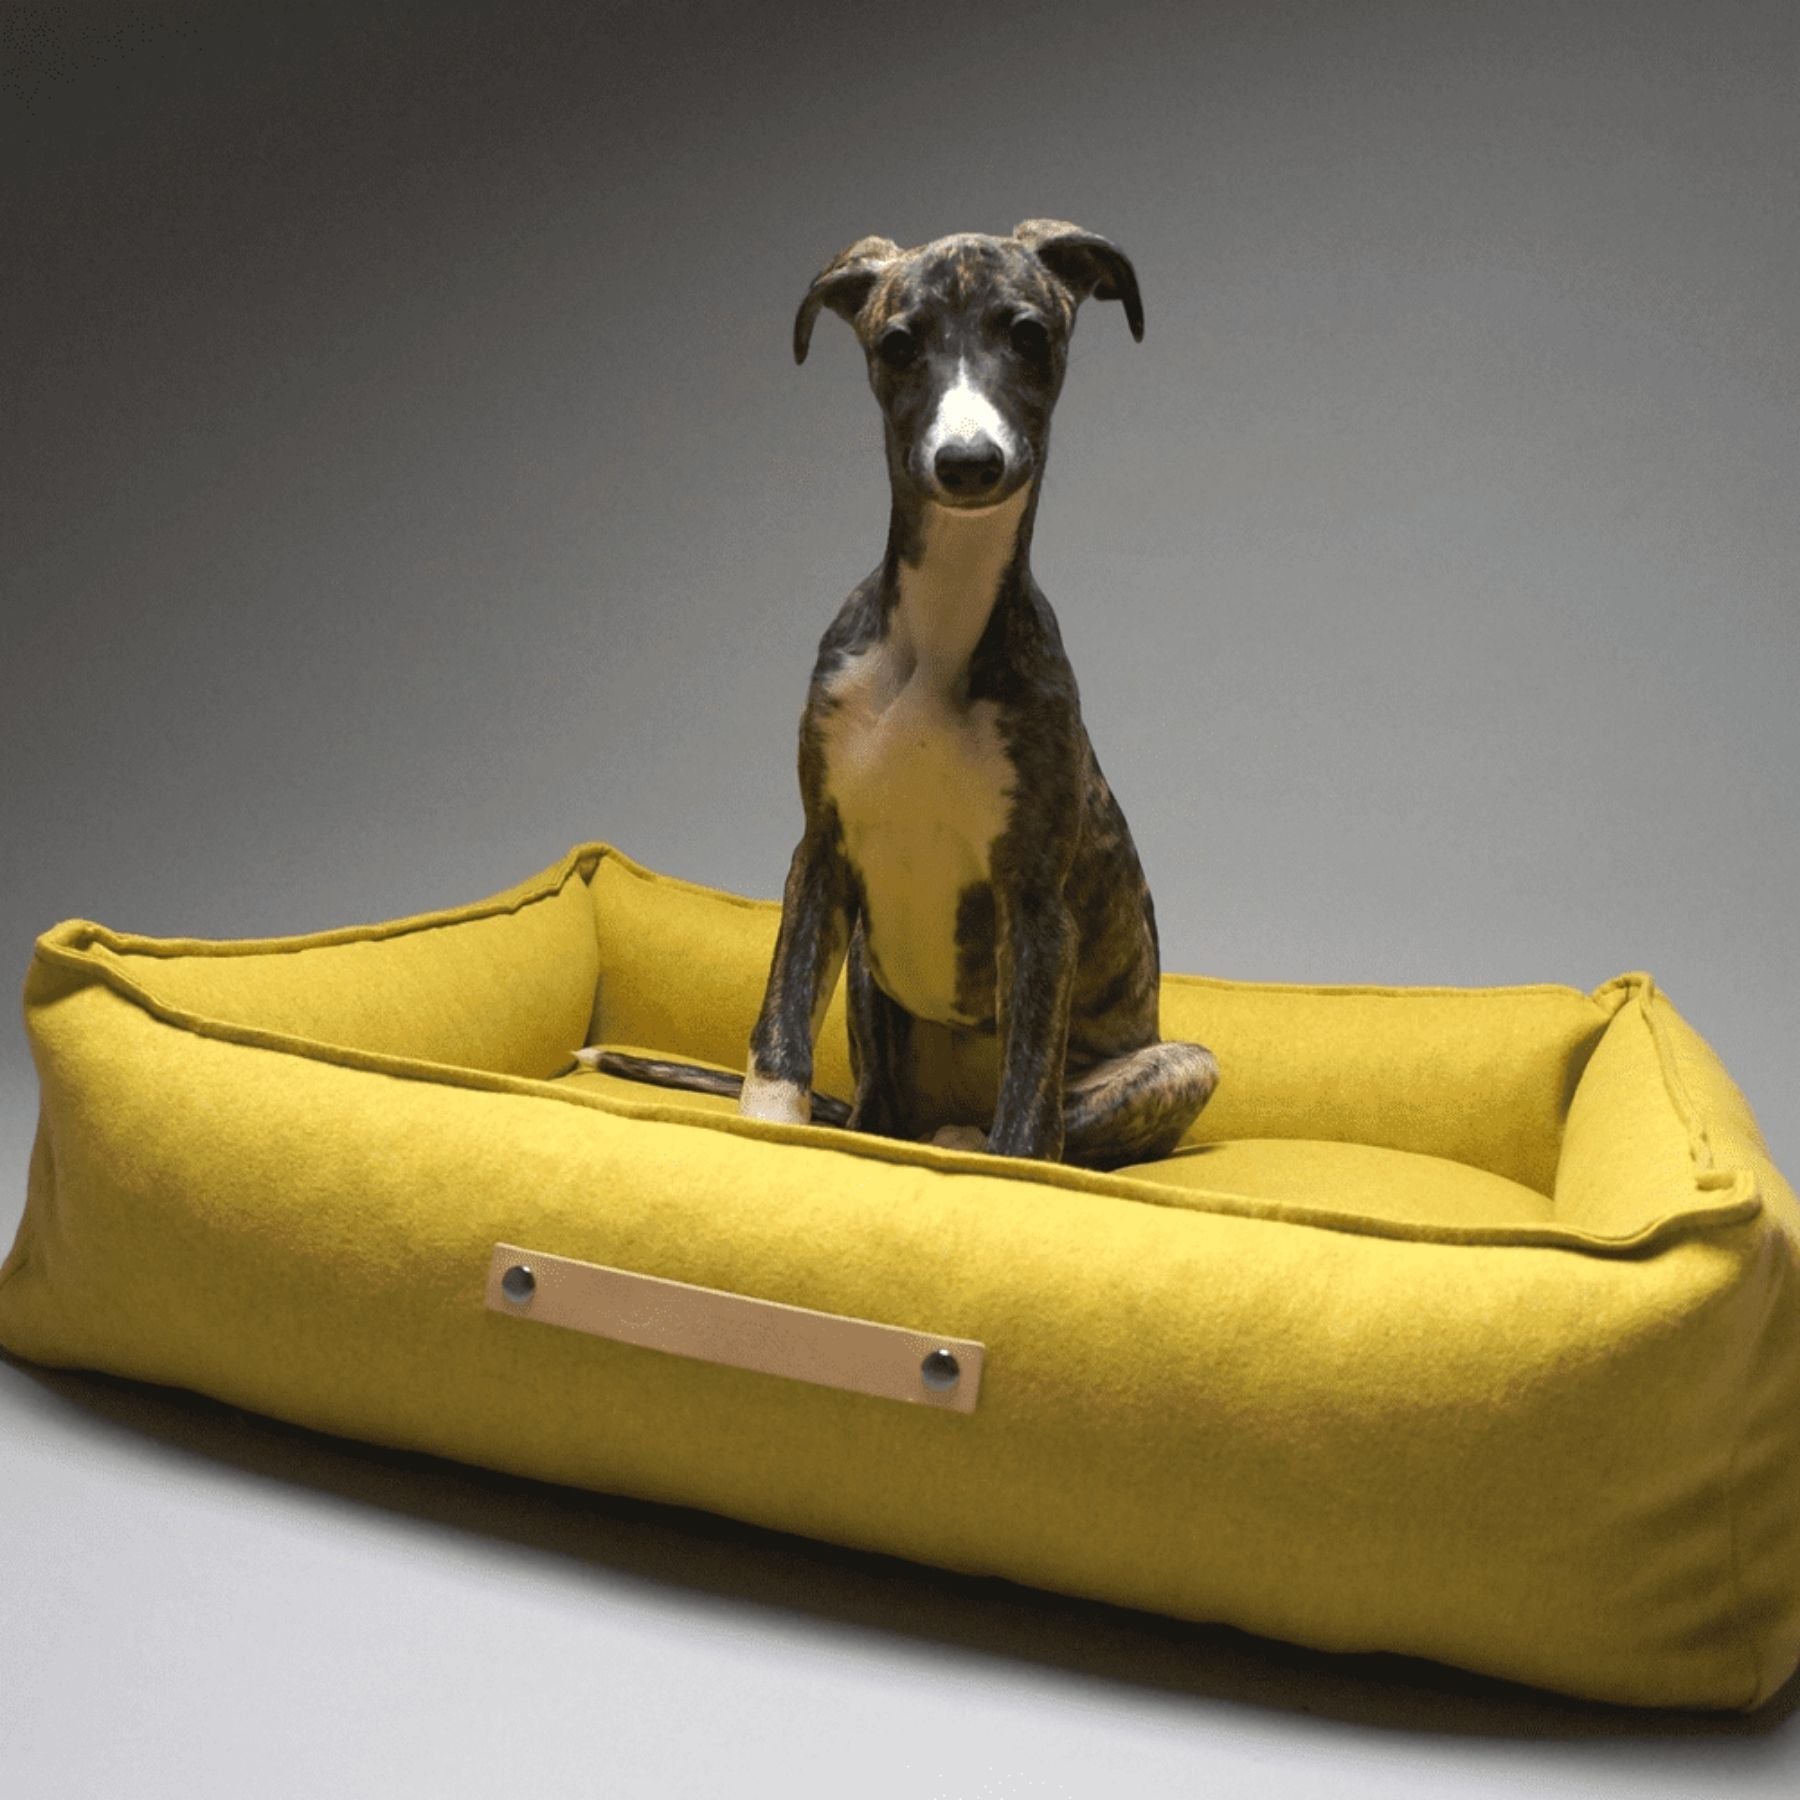 Dieses Bild zeigt ein Hundebett im nordischen Stil von LABBVENN. Es heißt Møvik und ist in drei Farben und drei Größen erhältlich. Das Bett wird für deinen Hund in sorgfältiger Handarbeit hergestellt, ist nachhaltig und sehr luxoriös. Dies ist die Farbe Honey-Gelb.